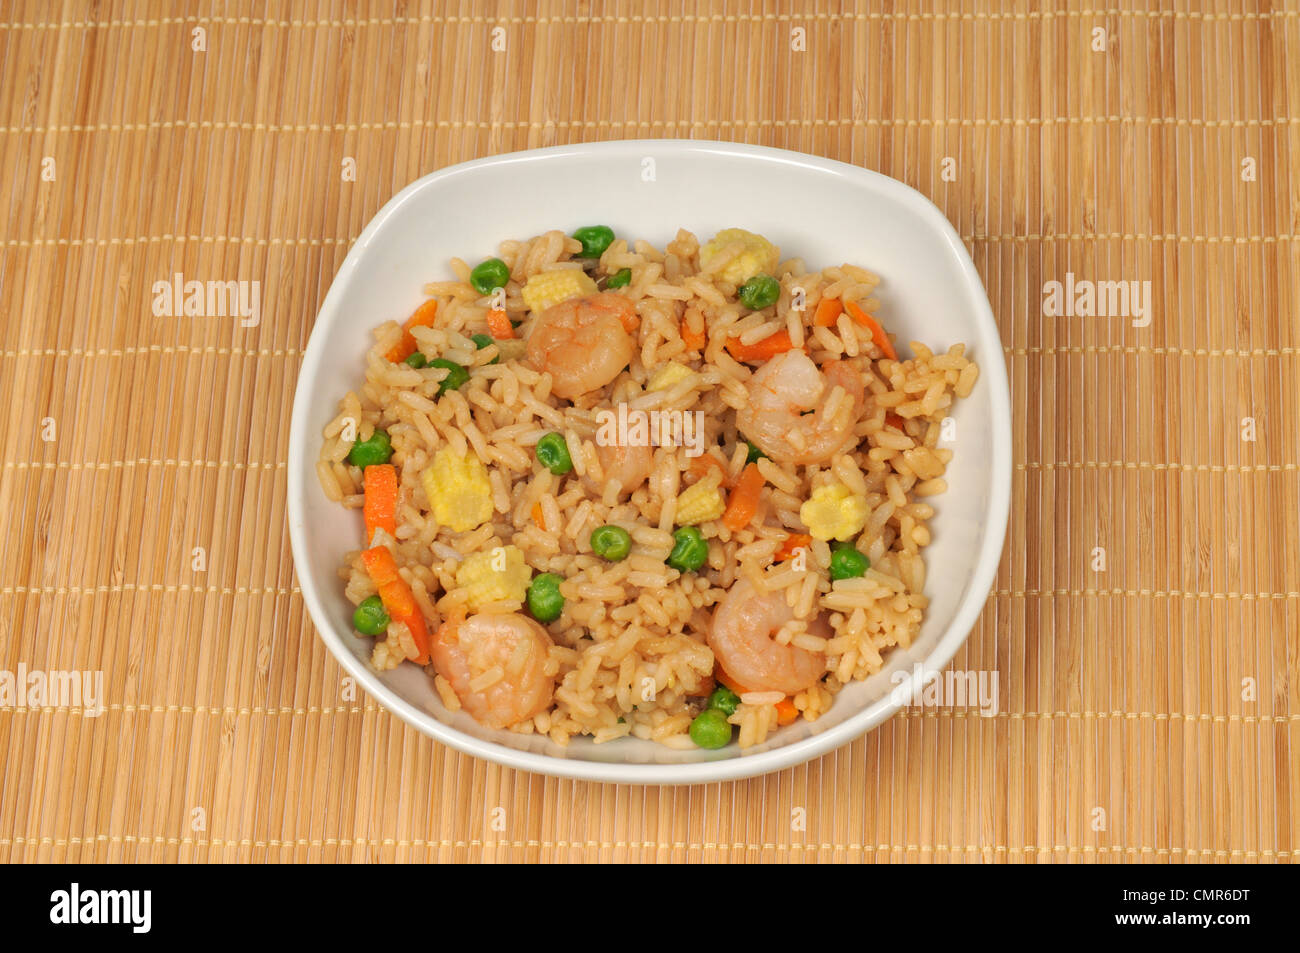 Bowl of chinese shrimp fried rice Stock Photo